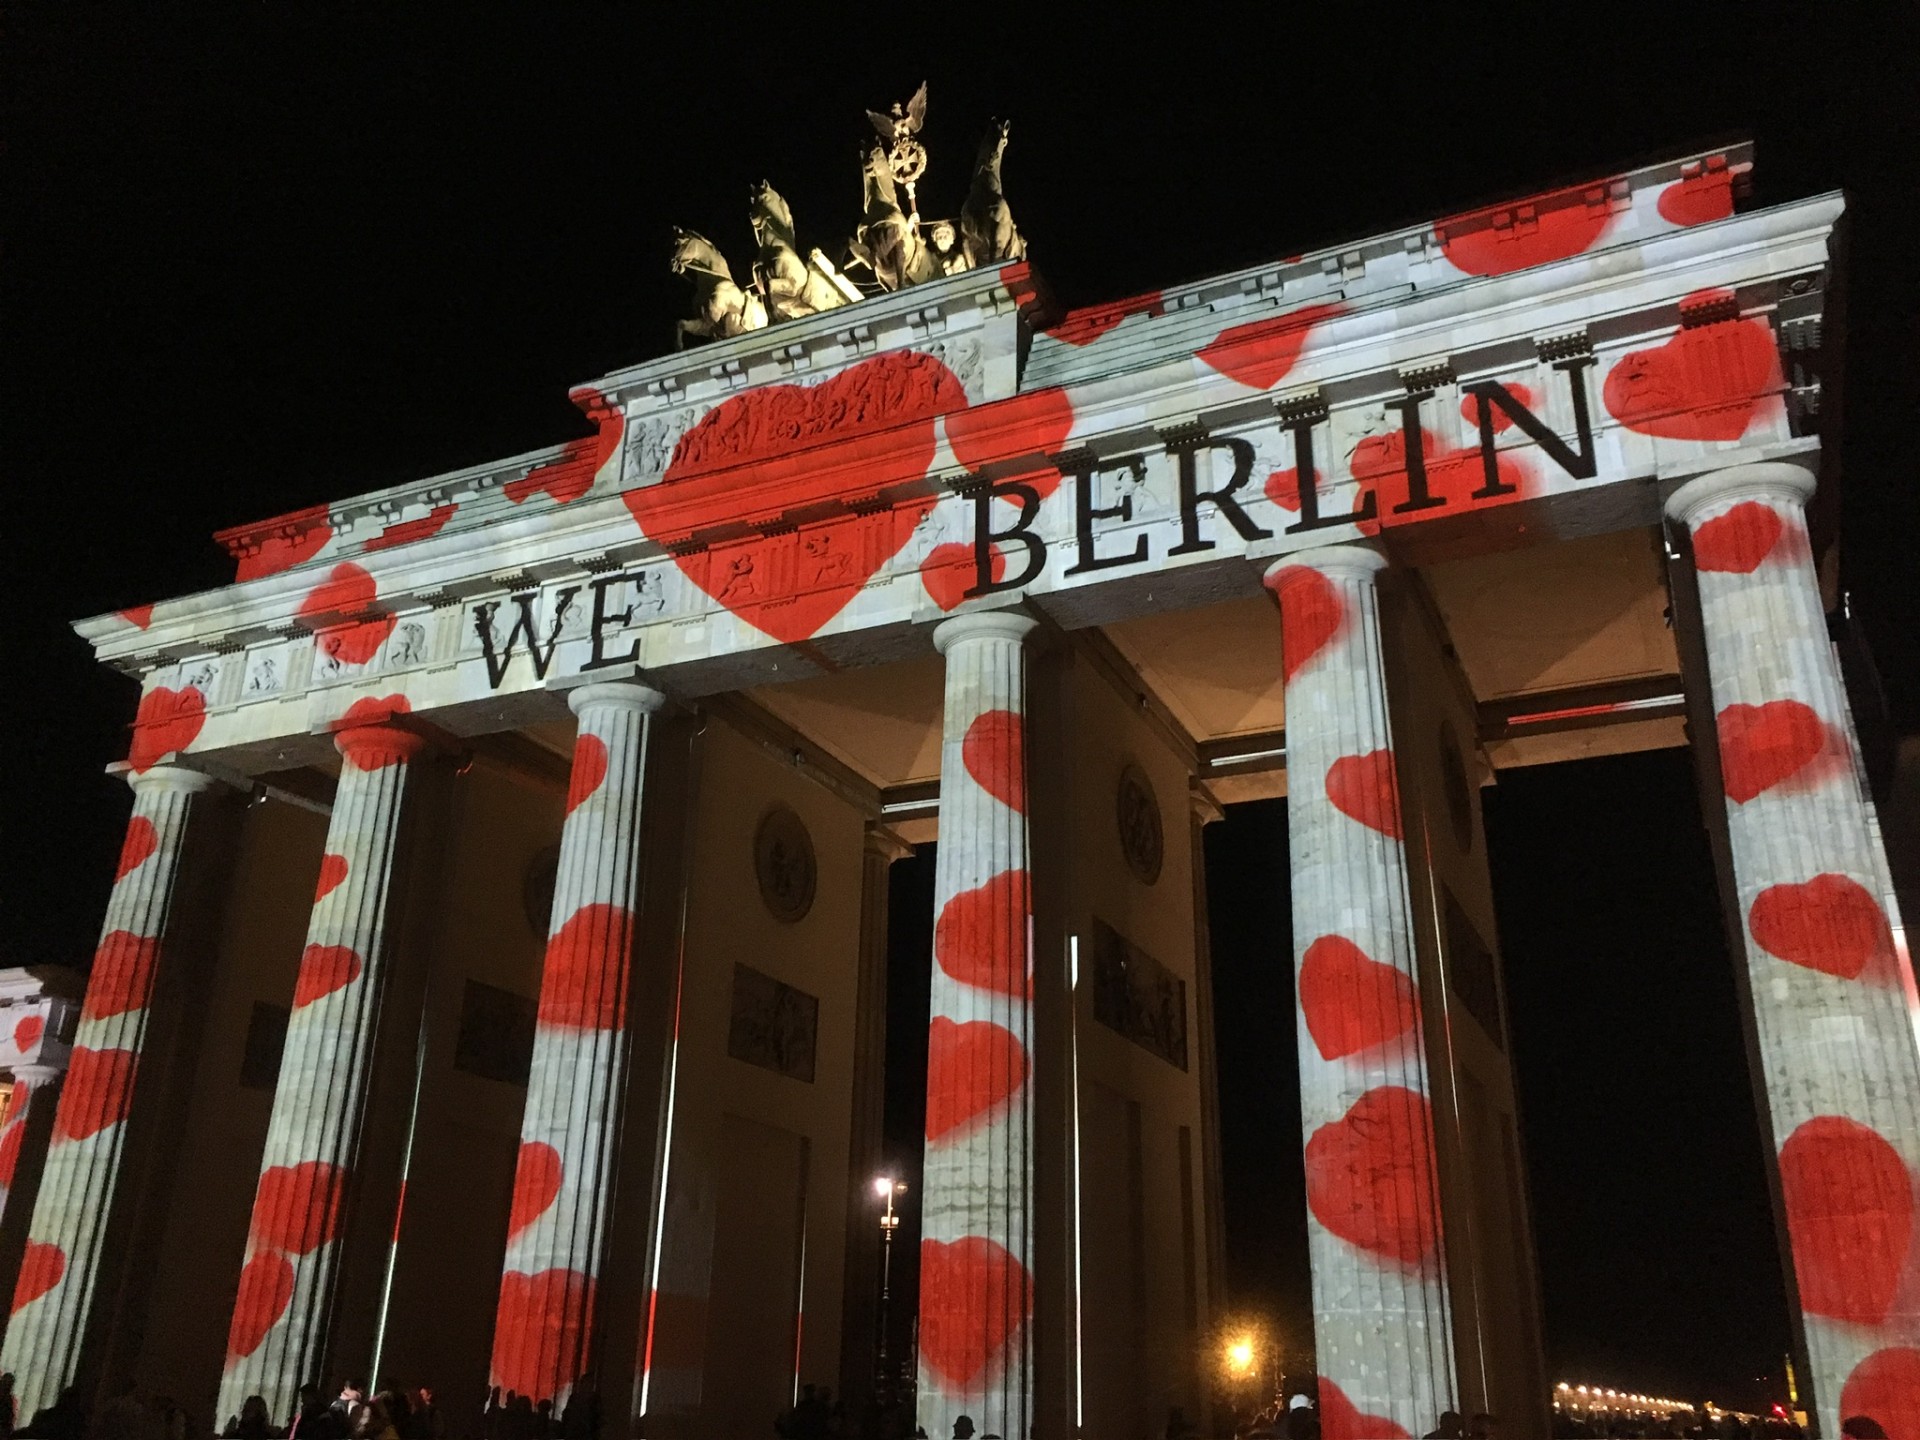 We love Berlin